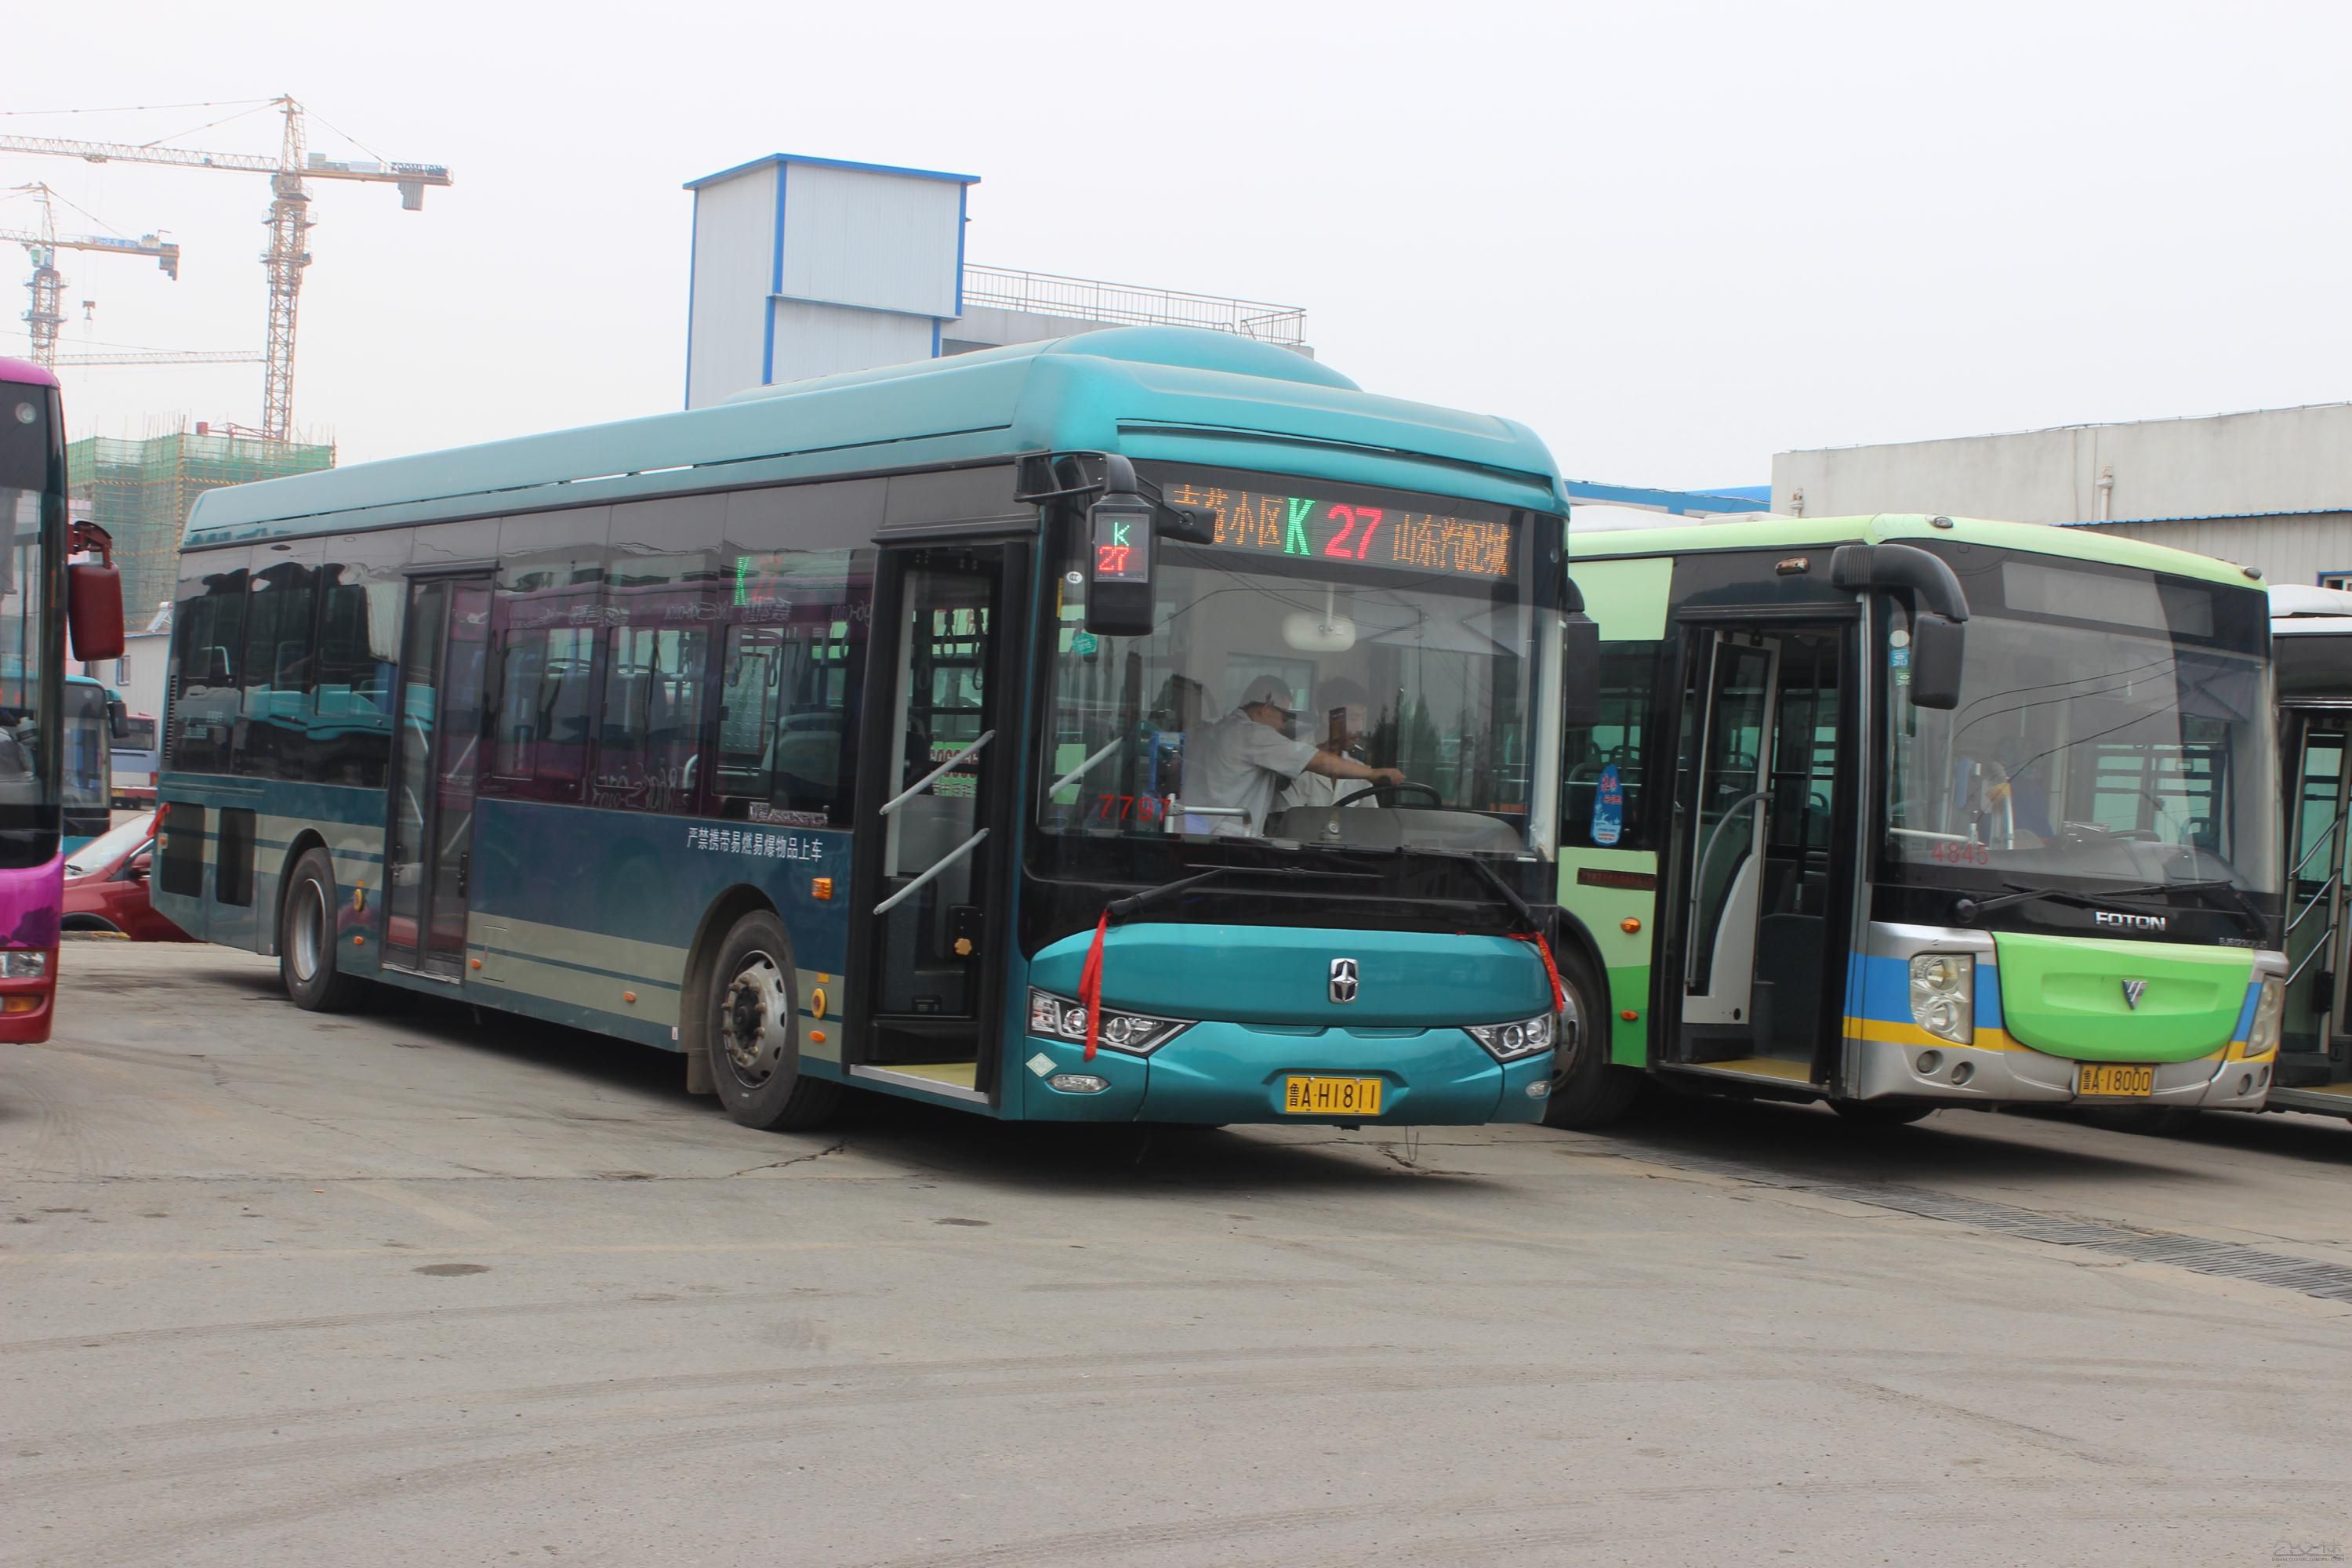 濟南公交K27路